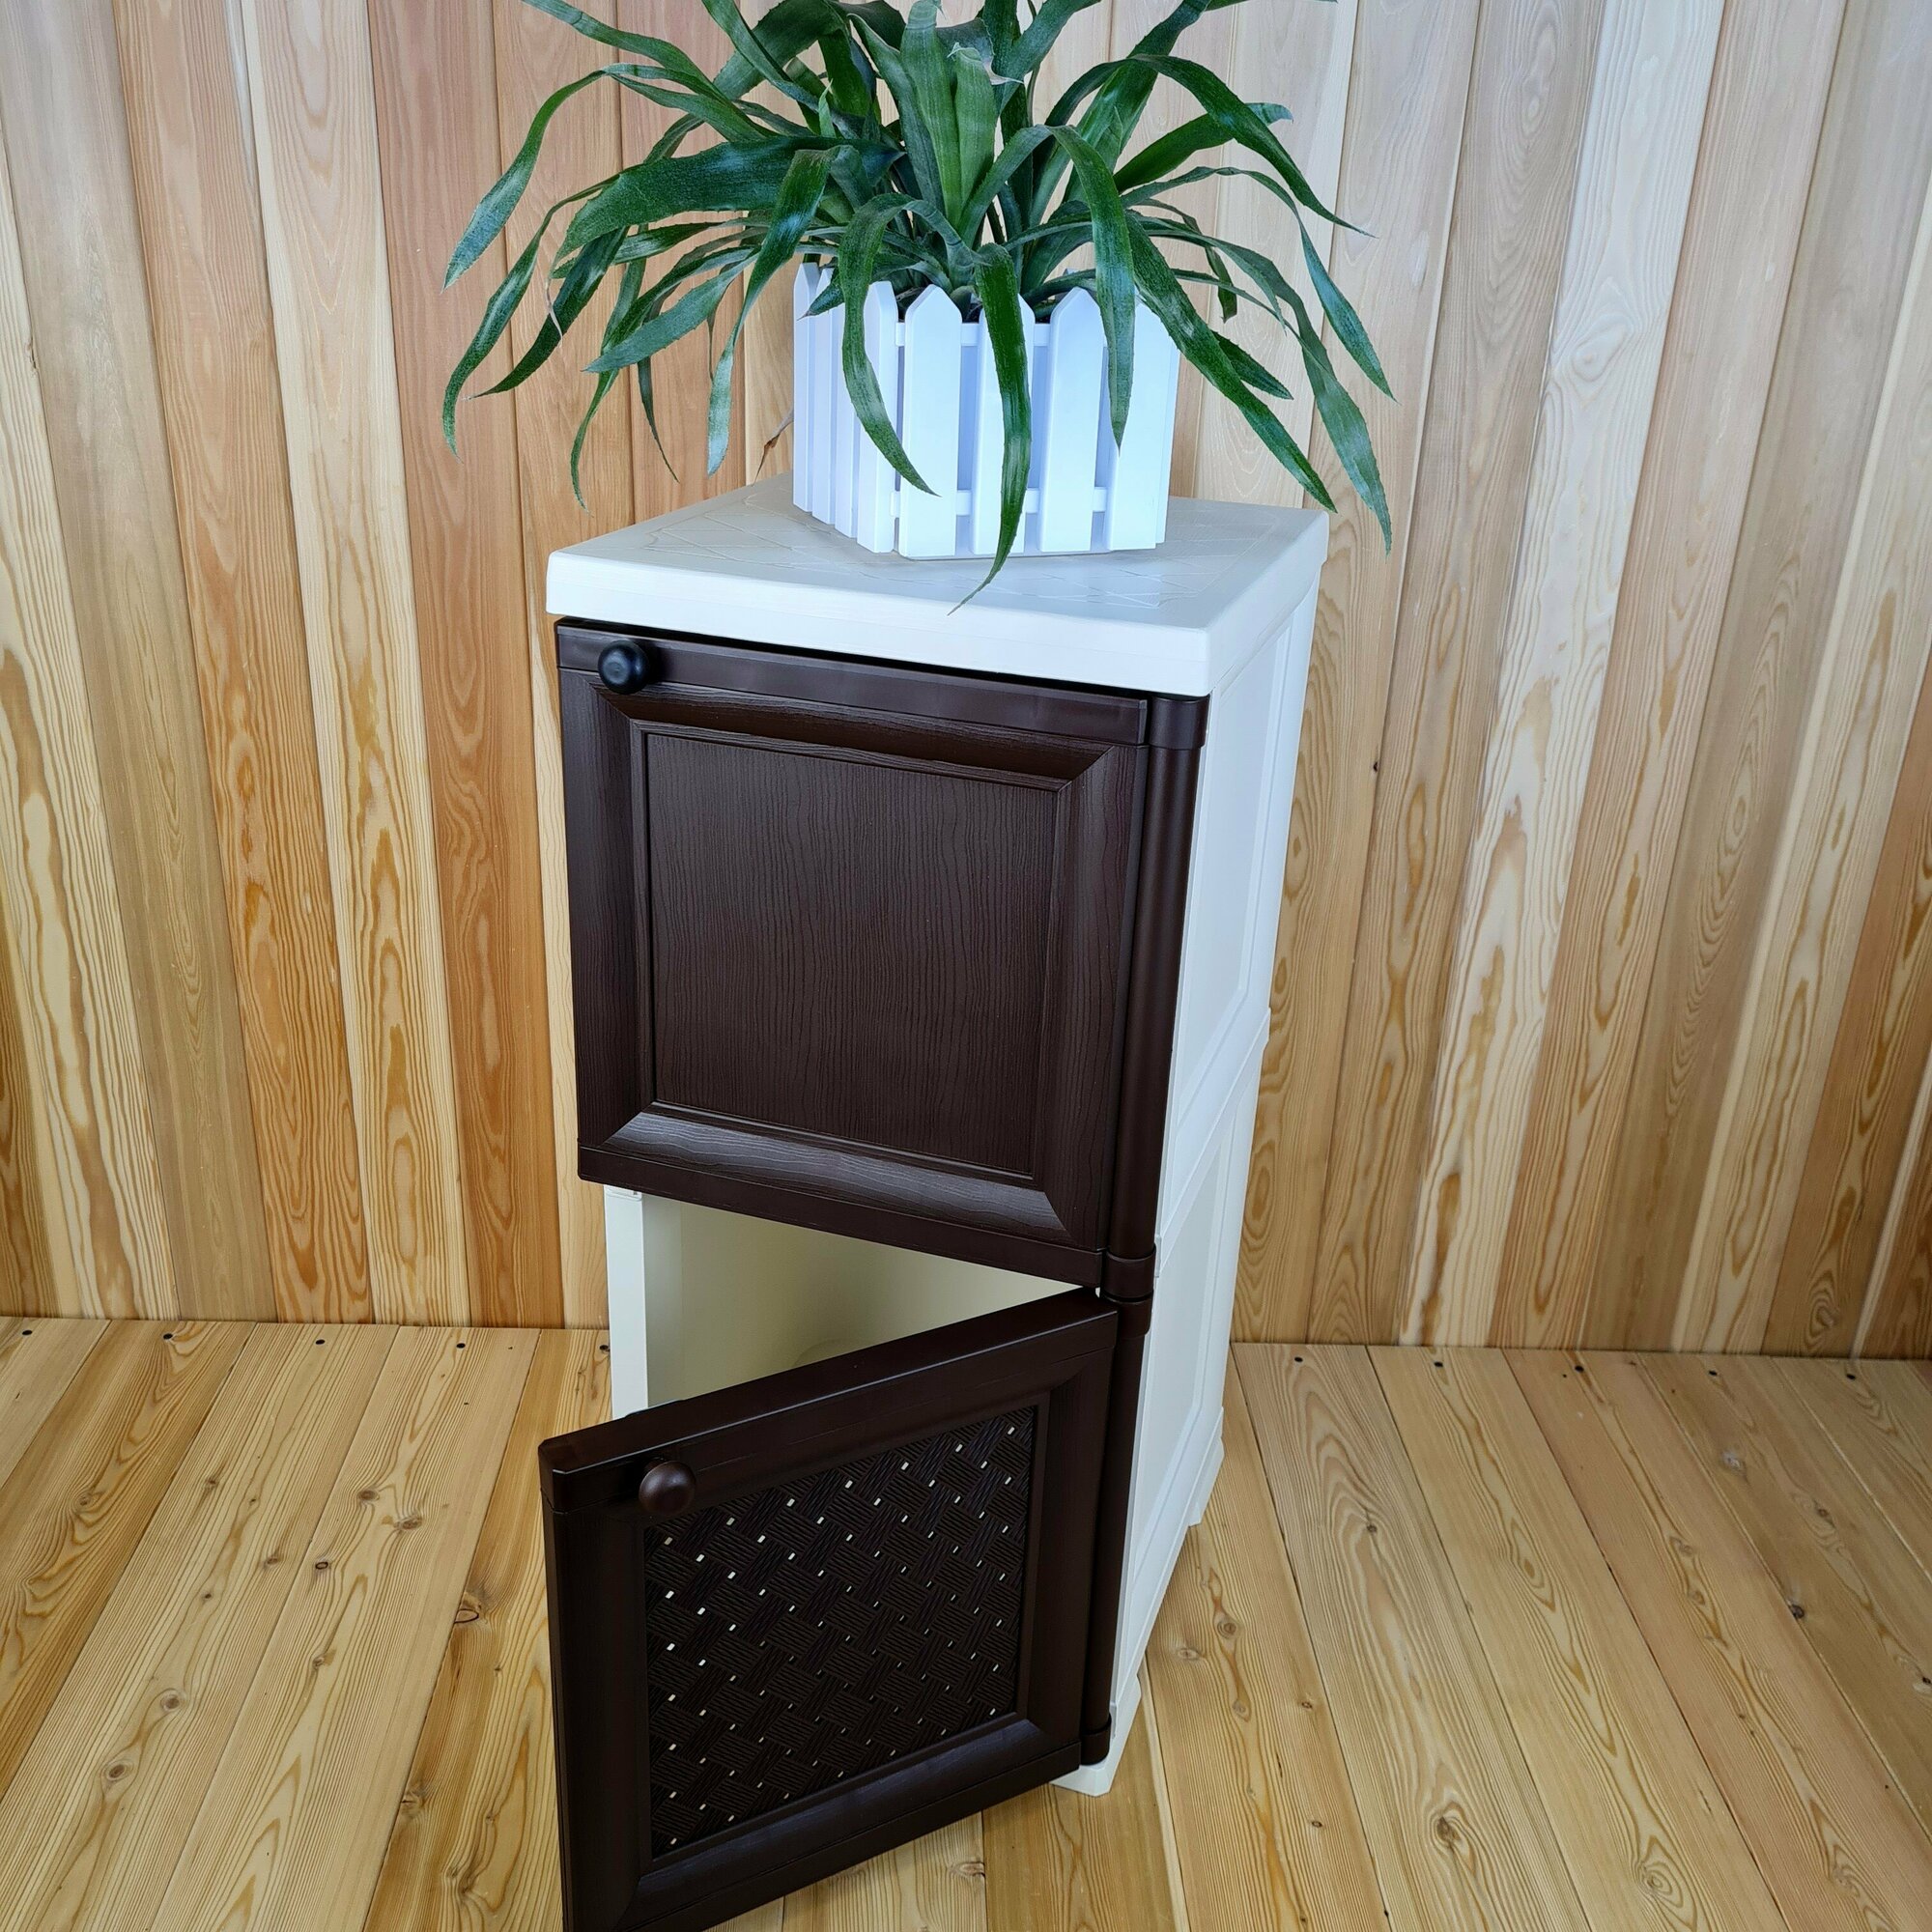 Тумба-шкаф пластиковая "УЮТ", с усиленными рёбрами жёсткости, две дверцы (верхняя сплошная, нижняя плетёная). Цвет: Бежевый с коричневыми дверцами.